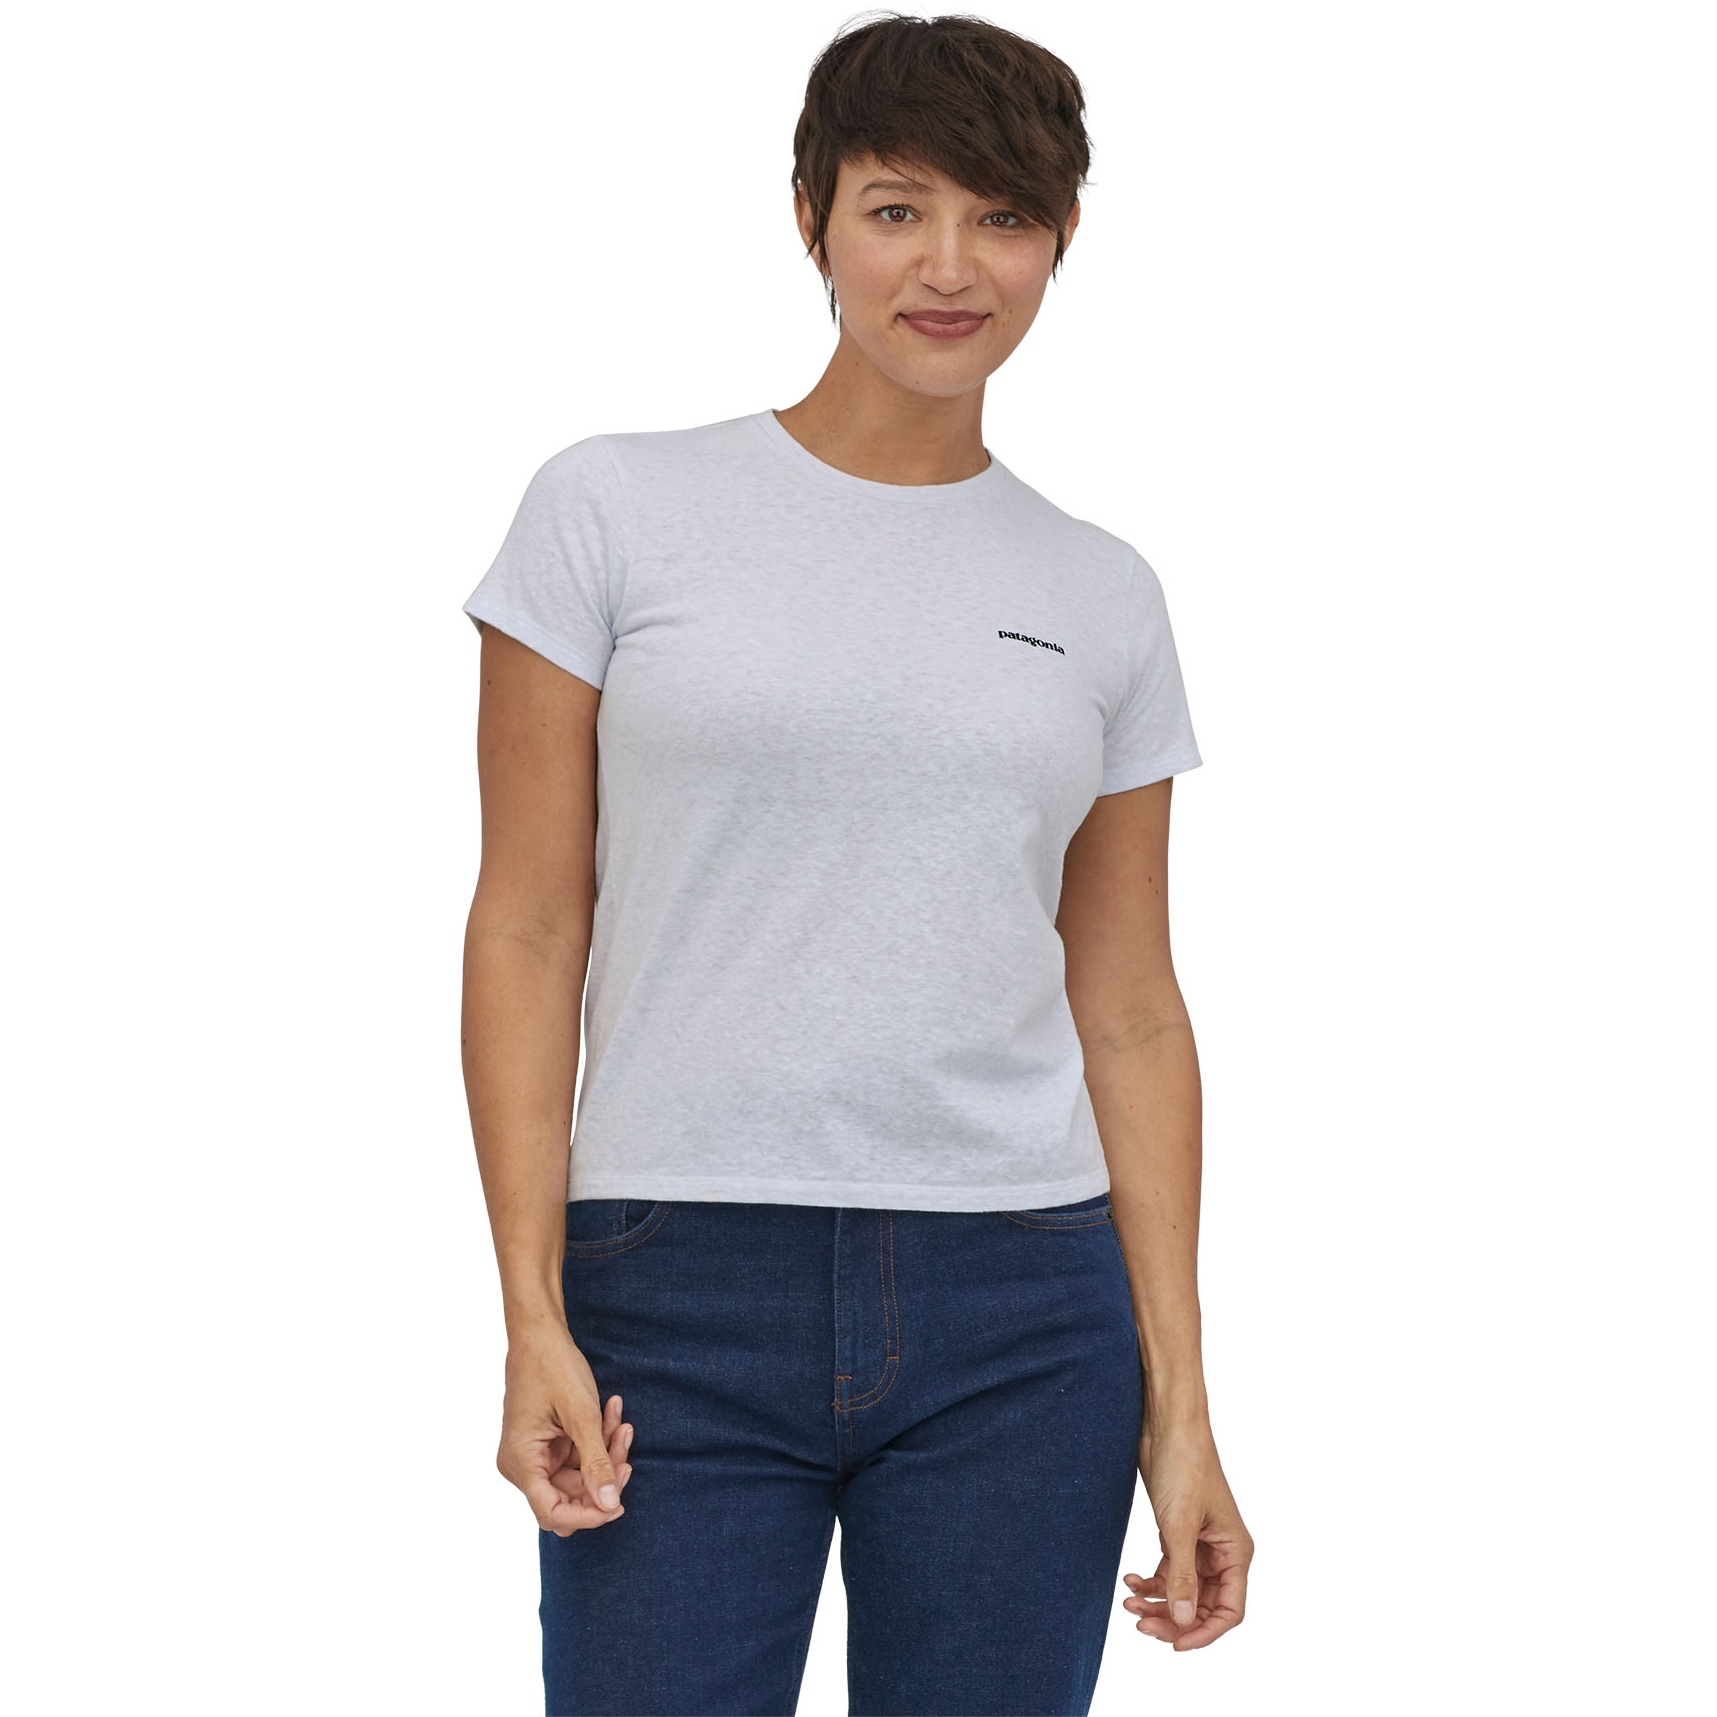 Produktbild von Patagonia P-6 Logo Responsibili-Tee T-Shirt Damen - weiß